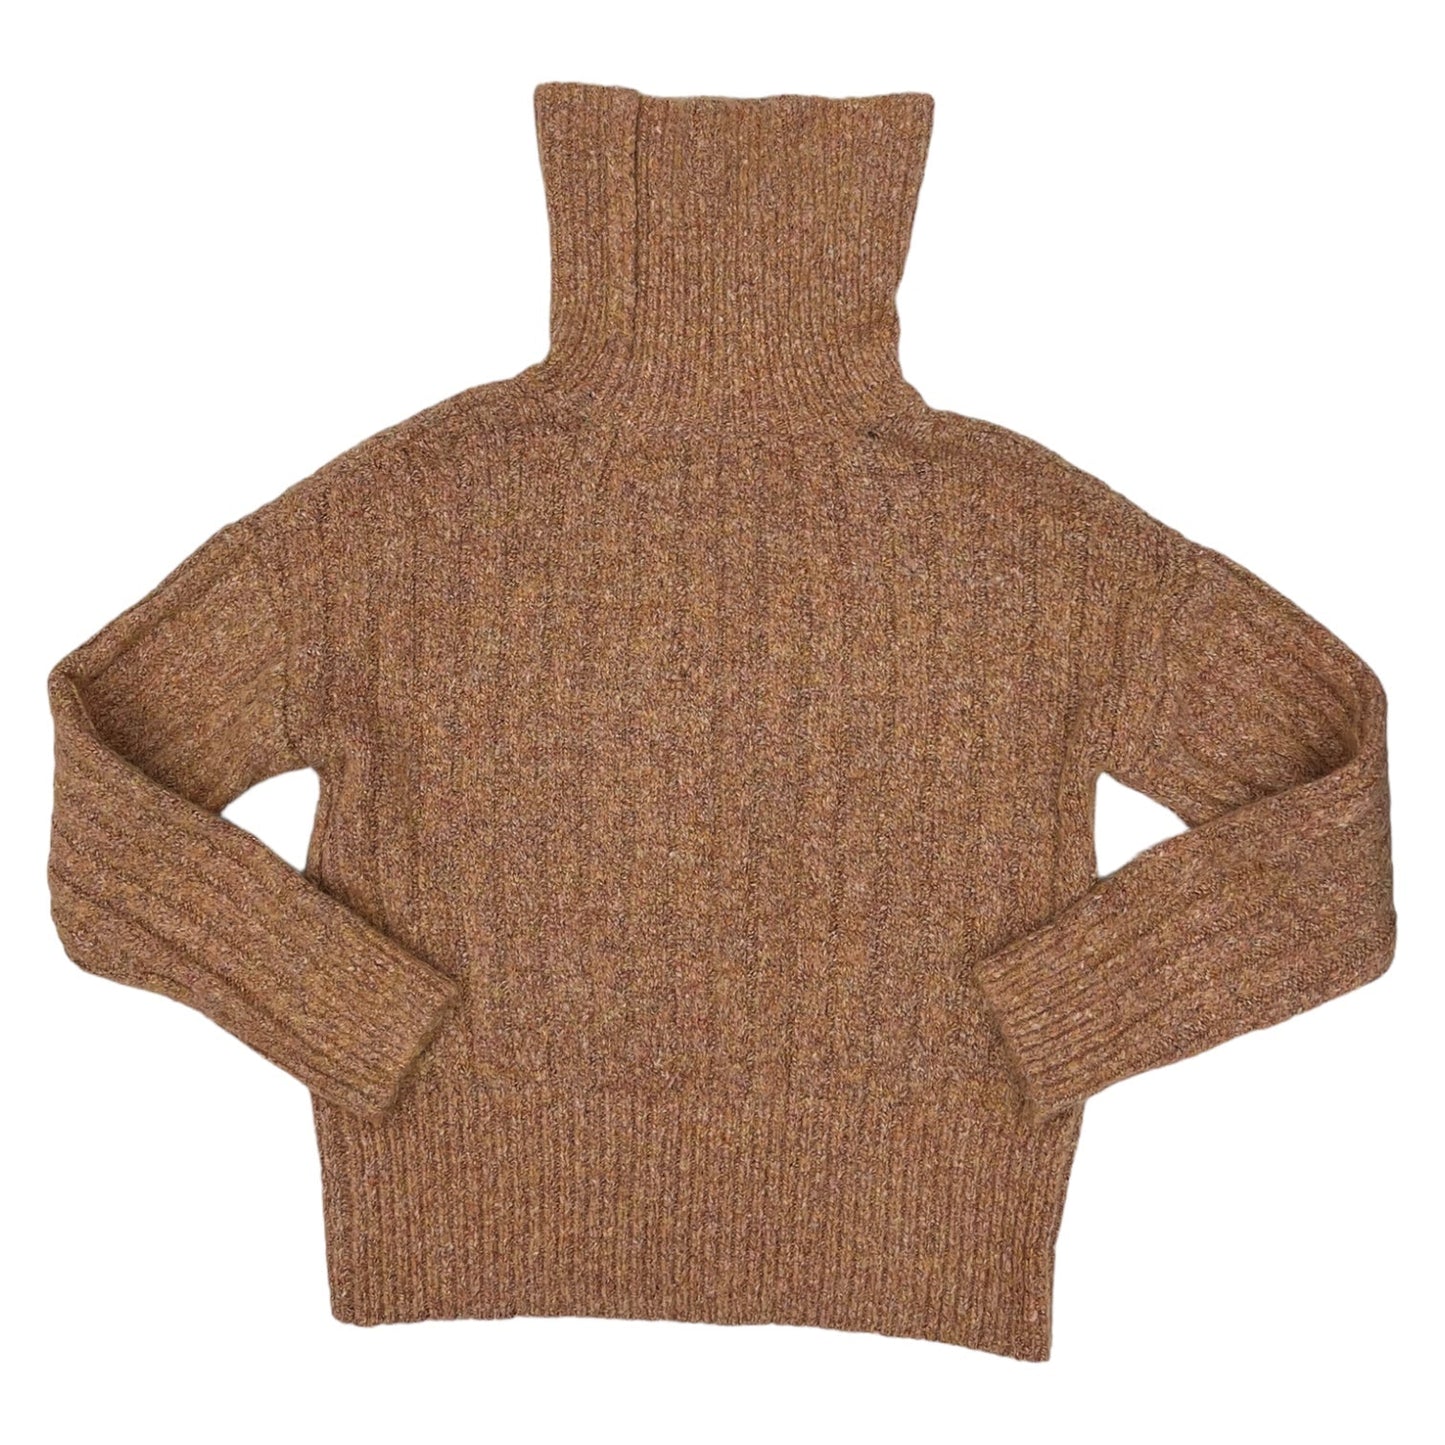 Sweater By William Rast  Size: Xs